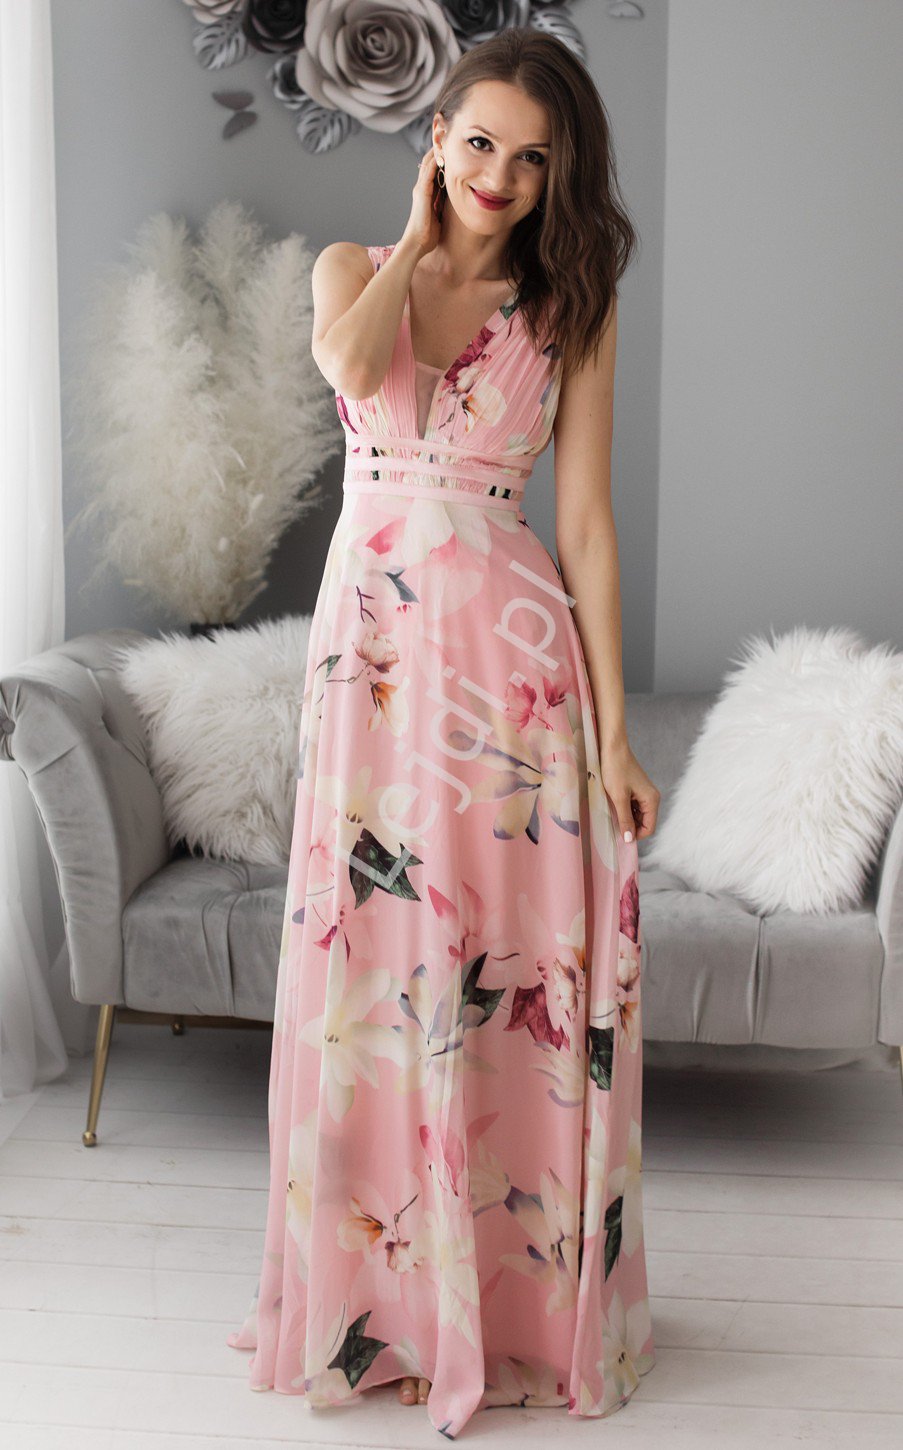 Fenomenalna suknia w kwiaty na jasno różowym tle 